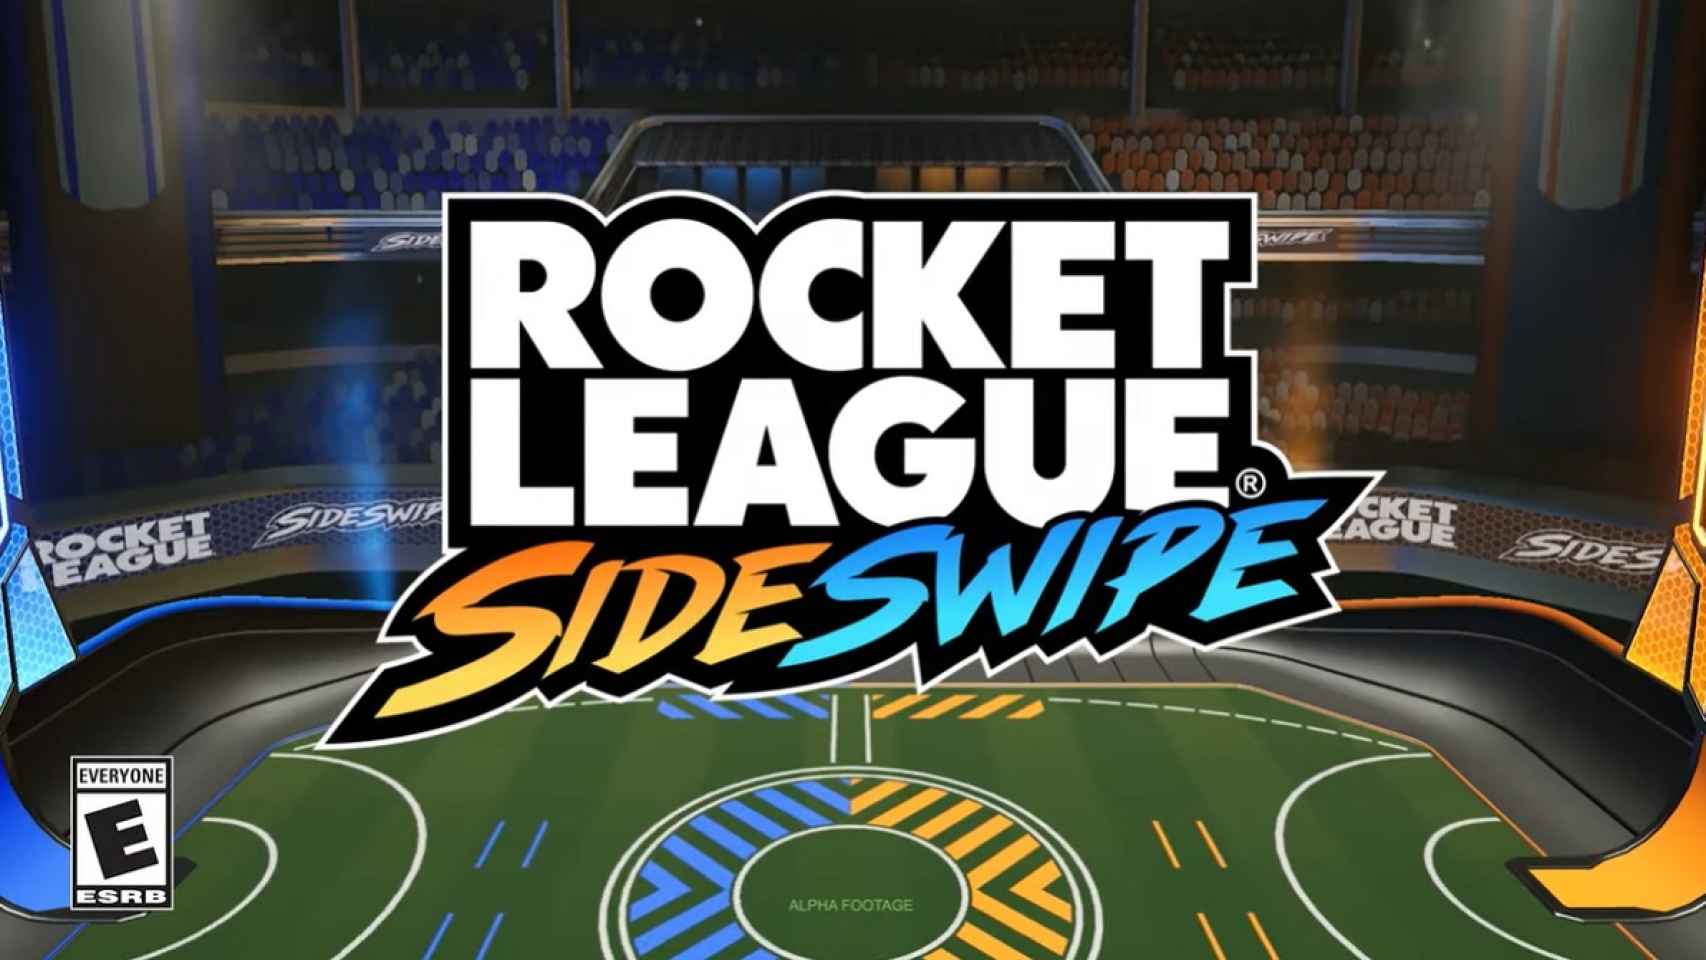 Rocket League SideSwipe, el mítico juego llega a Android